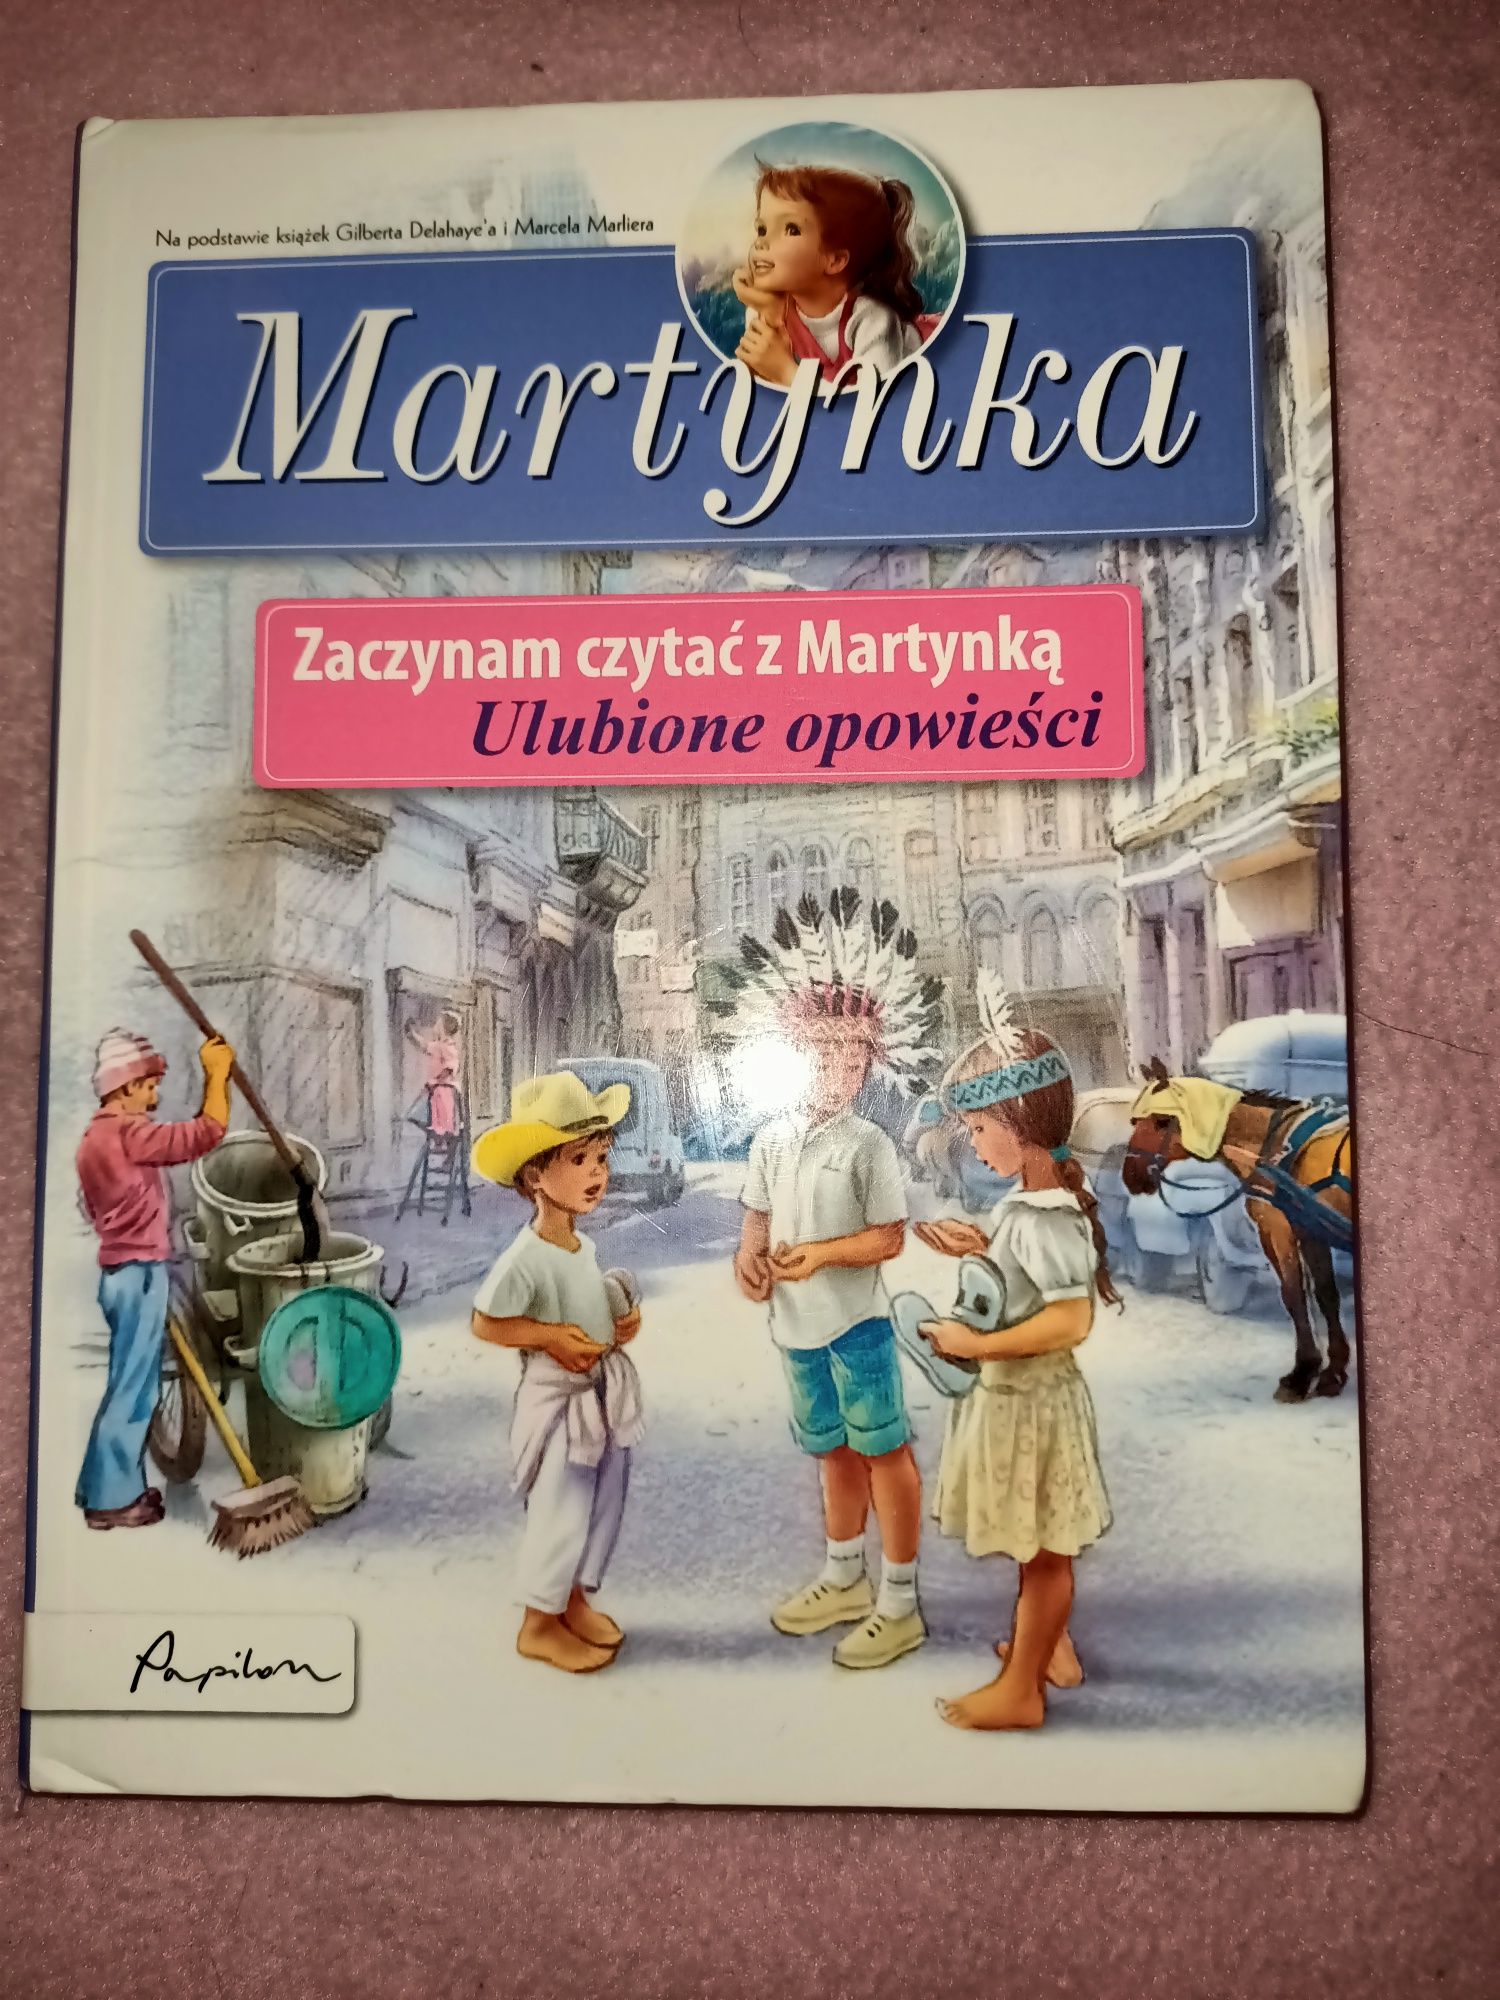 Zaczynam czytać z Martynką 3 Ulubione opowieści